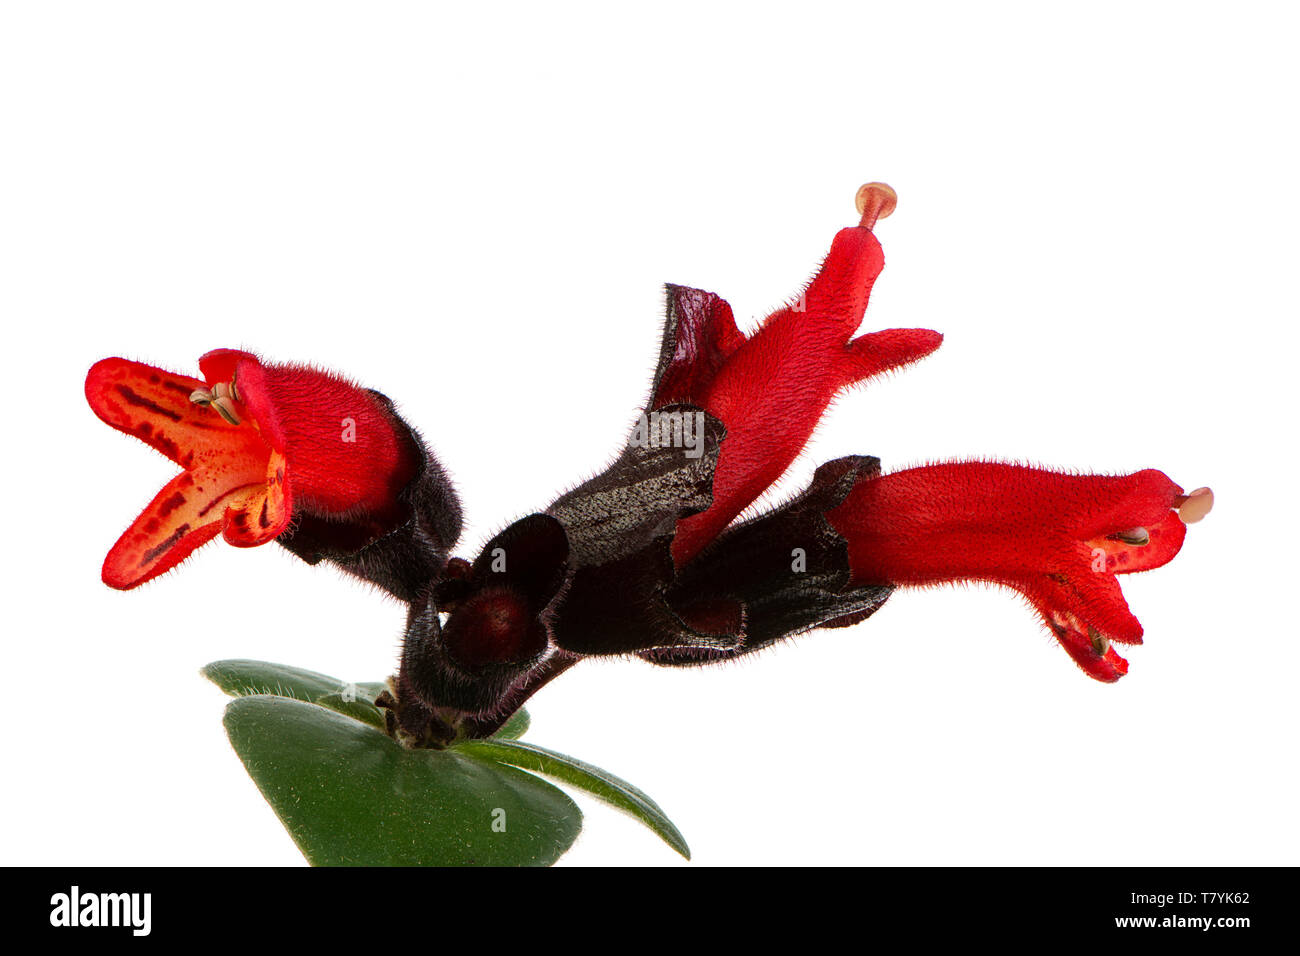 Makro einer isolierten roten Lippenstift pflanze Blüte Stockfotografie -  Alamy